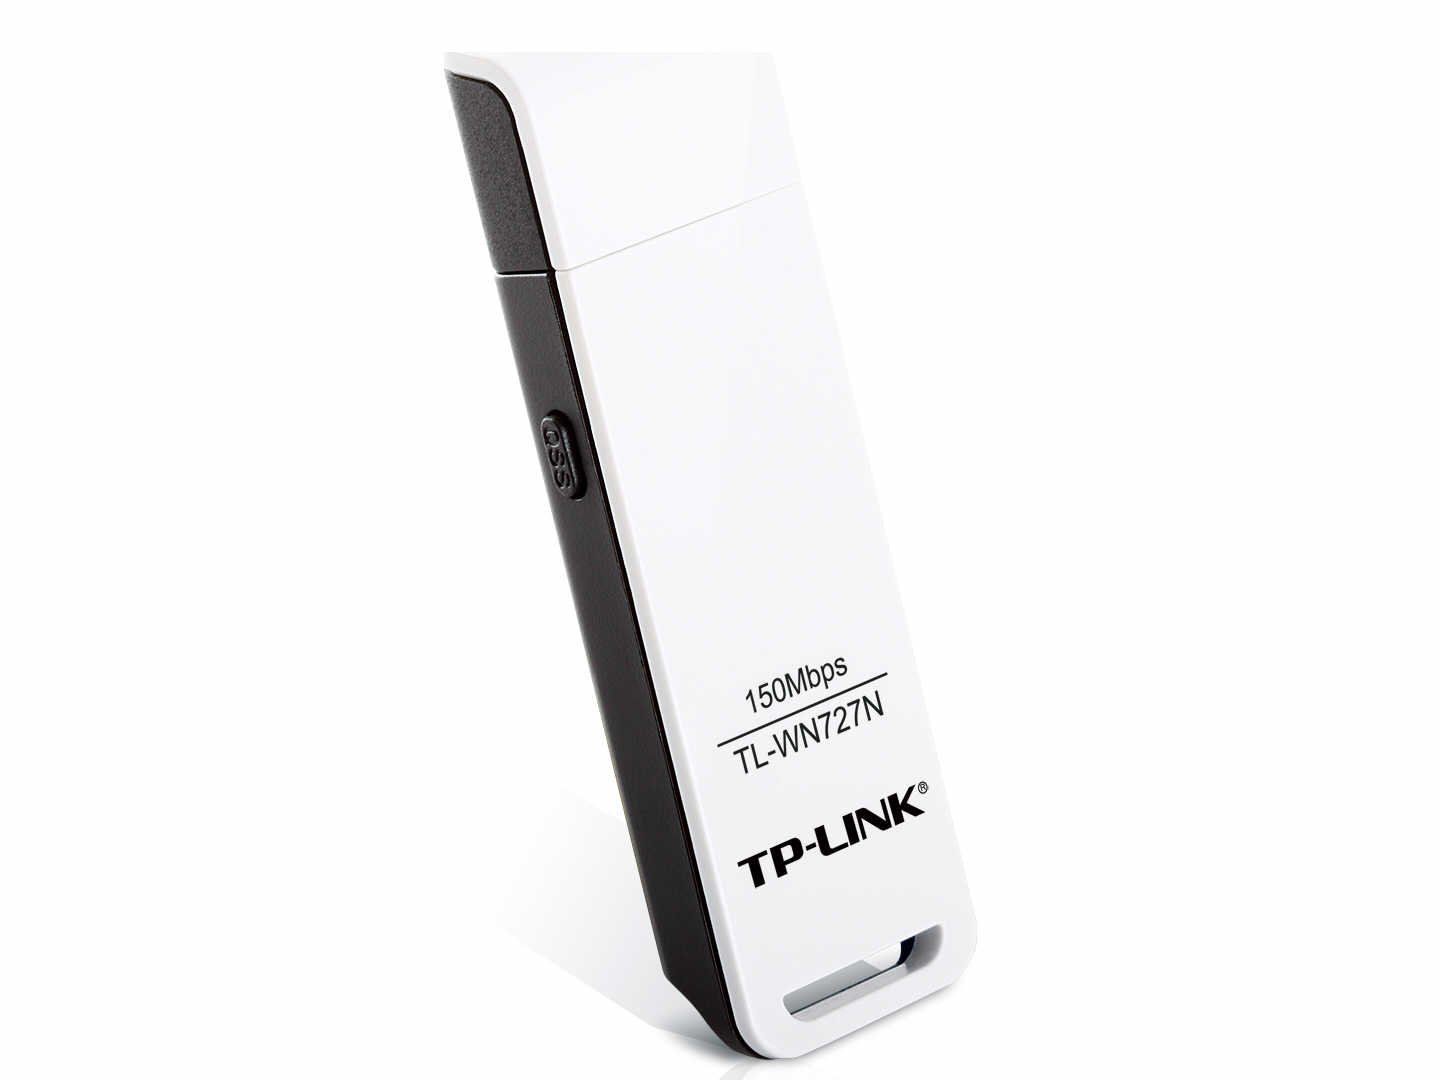 D-Link DWA-131 Clé USB nano Wireless N 300 Mbps – Votre partenaire hi-tech !